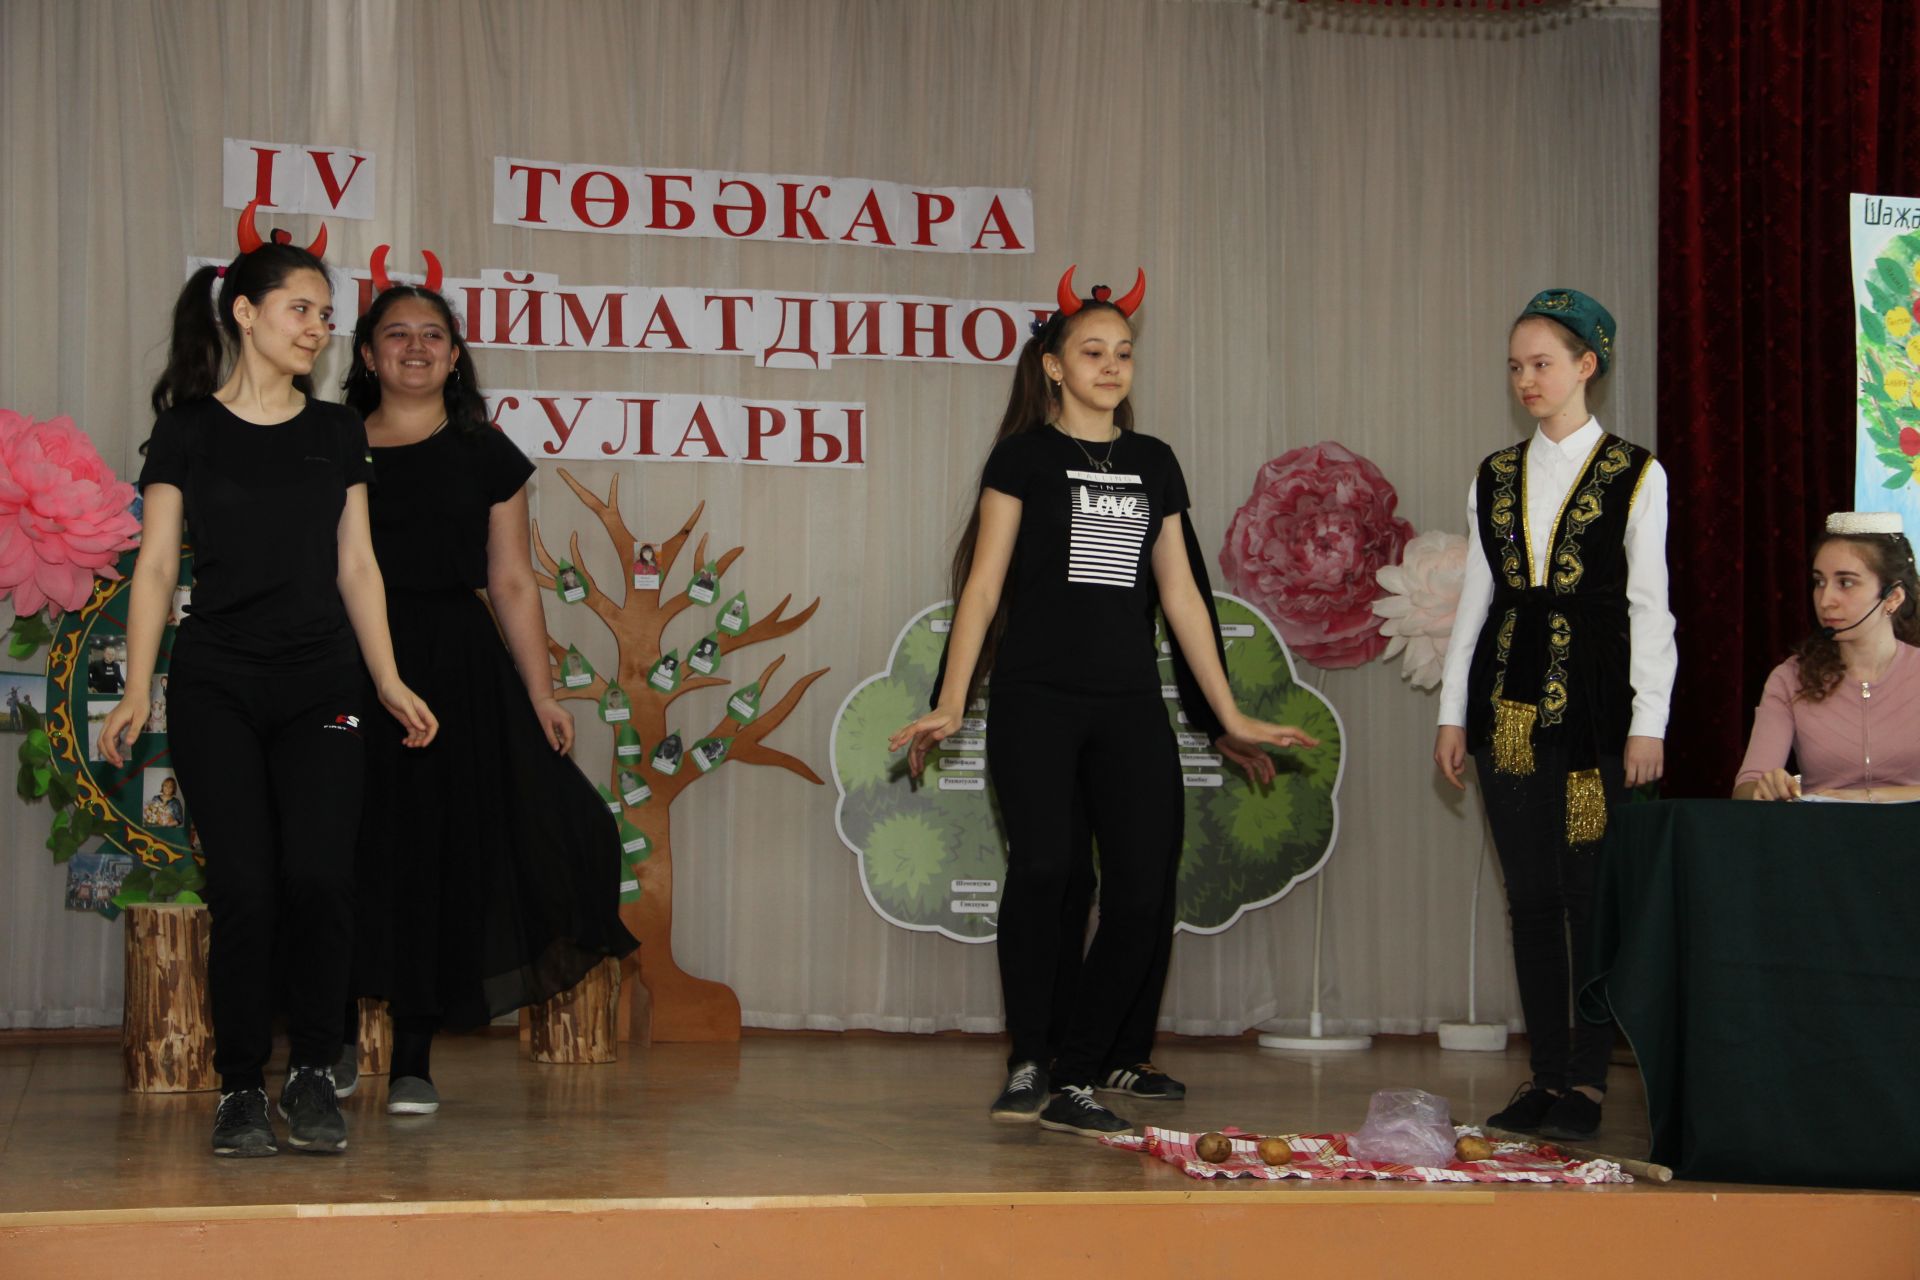 Осиново бистәсендәге гимназиядә бүген зур бәйрәм: IV төбәкара С.К.Гыйматдинов укулары